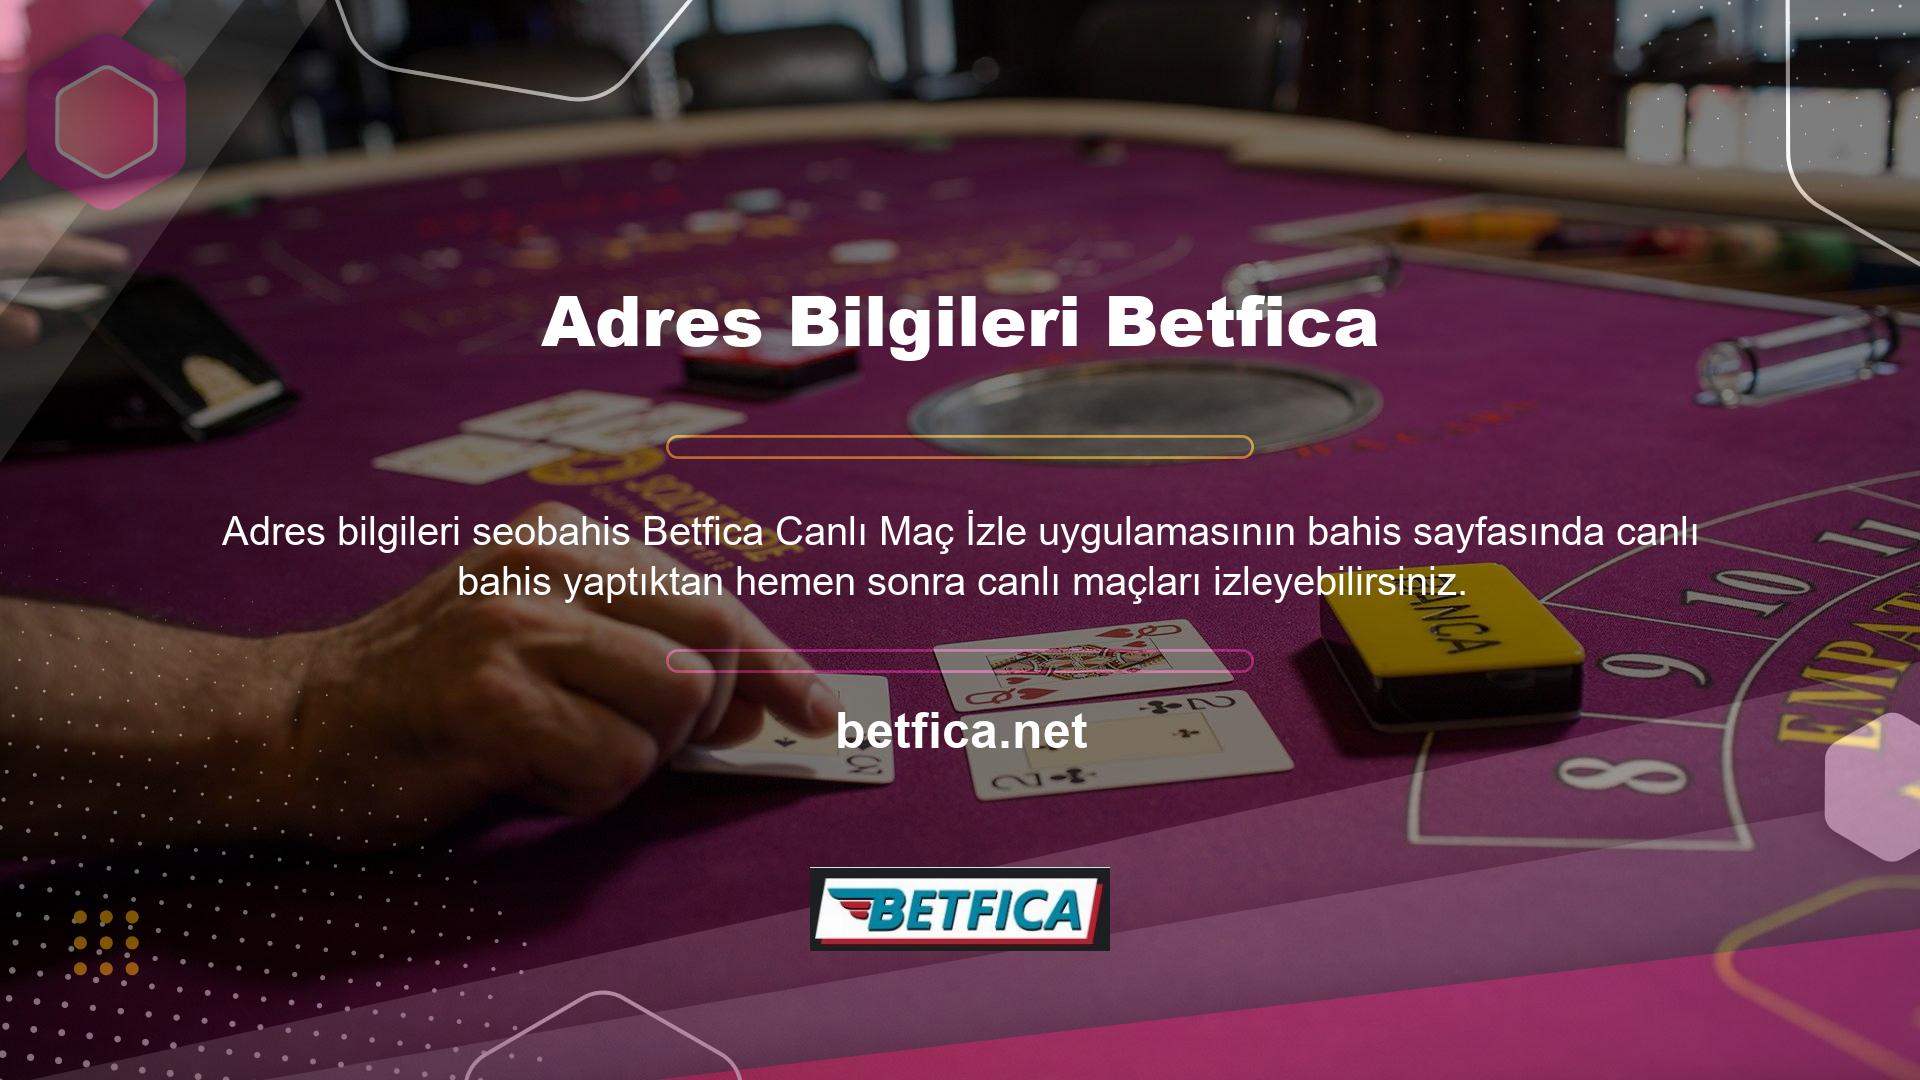 Betfica Canlı Oyunlar Bahis Sitesi ile eş zamanlı olarak canlı maçları izleyebilir ve canlı bahislerinizi yapabilirsiniz